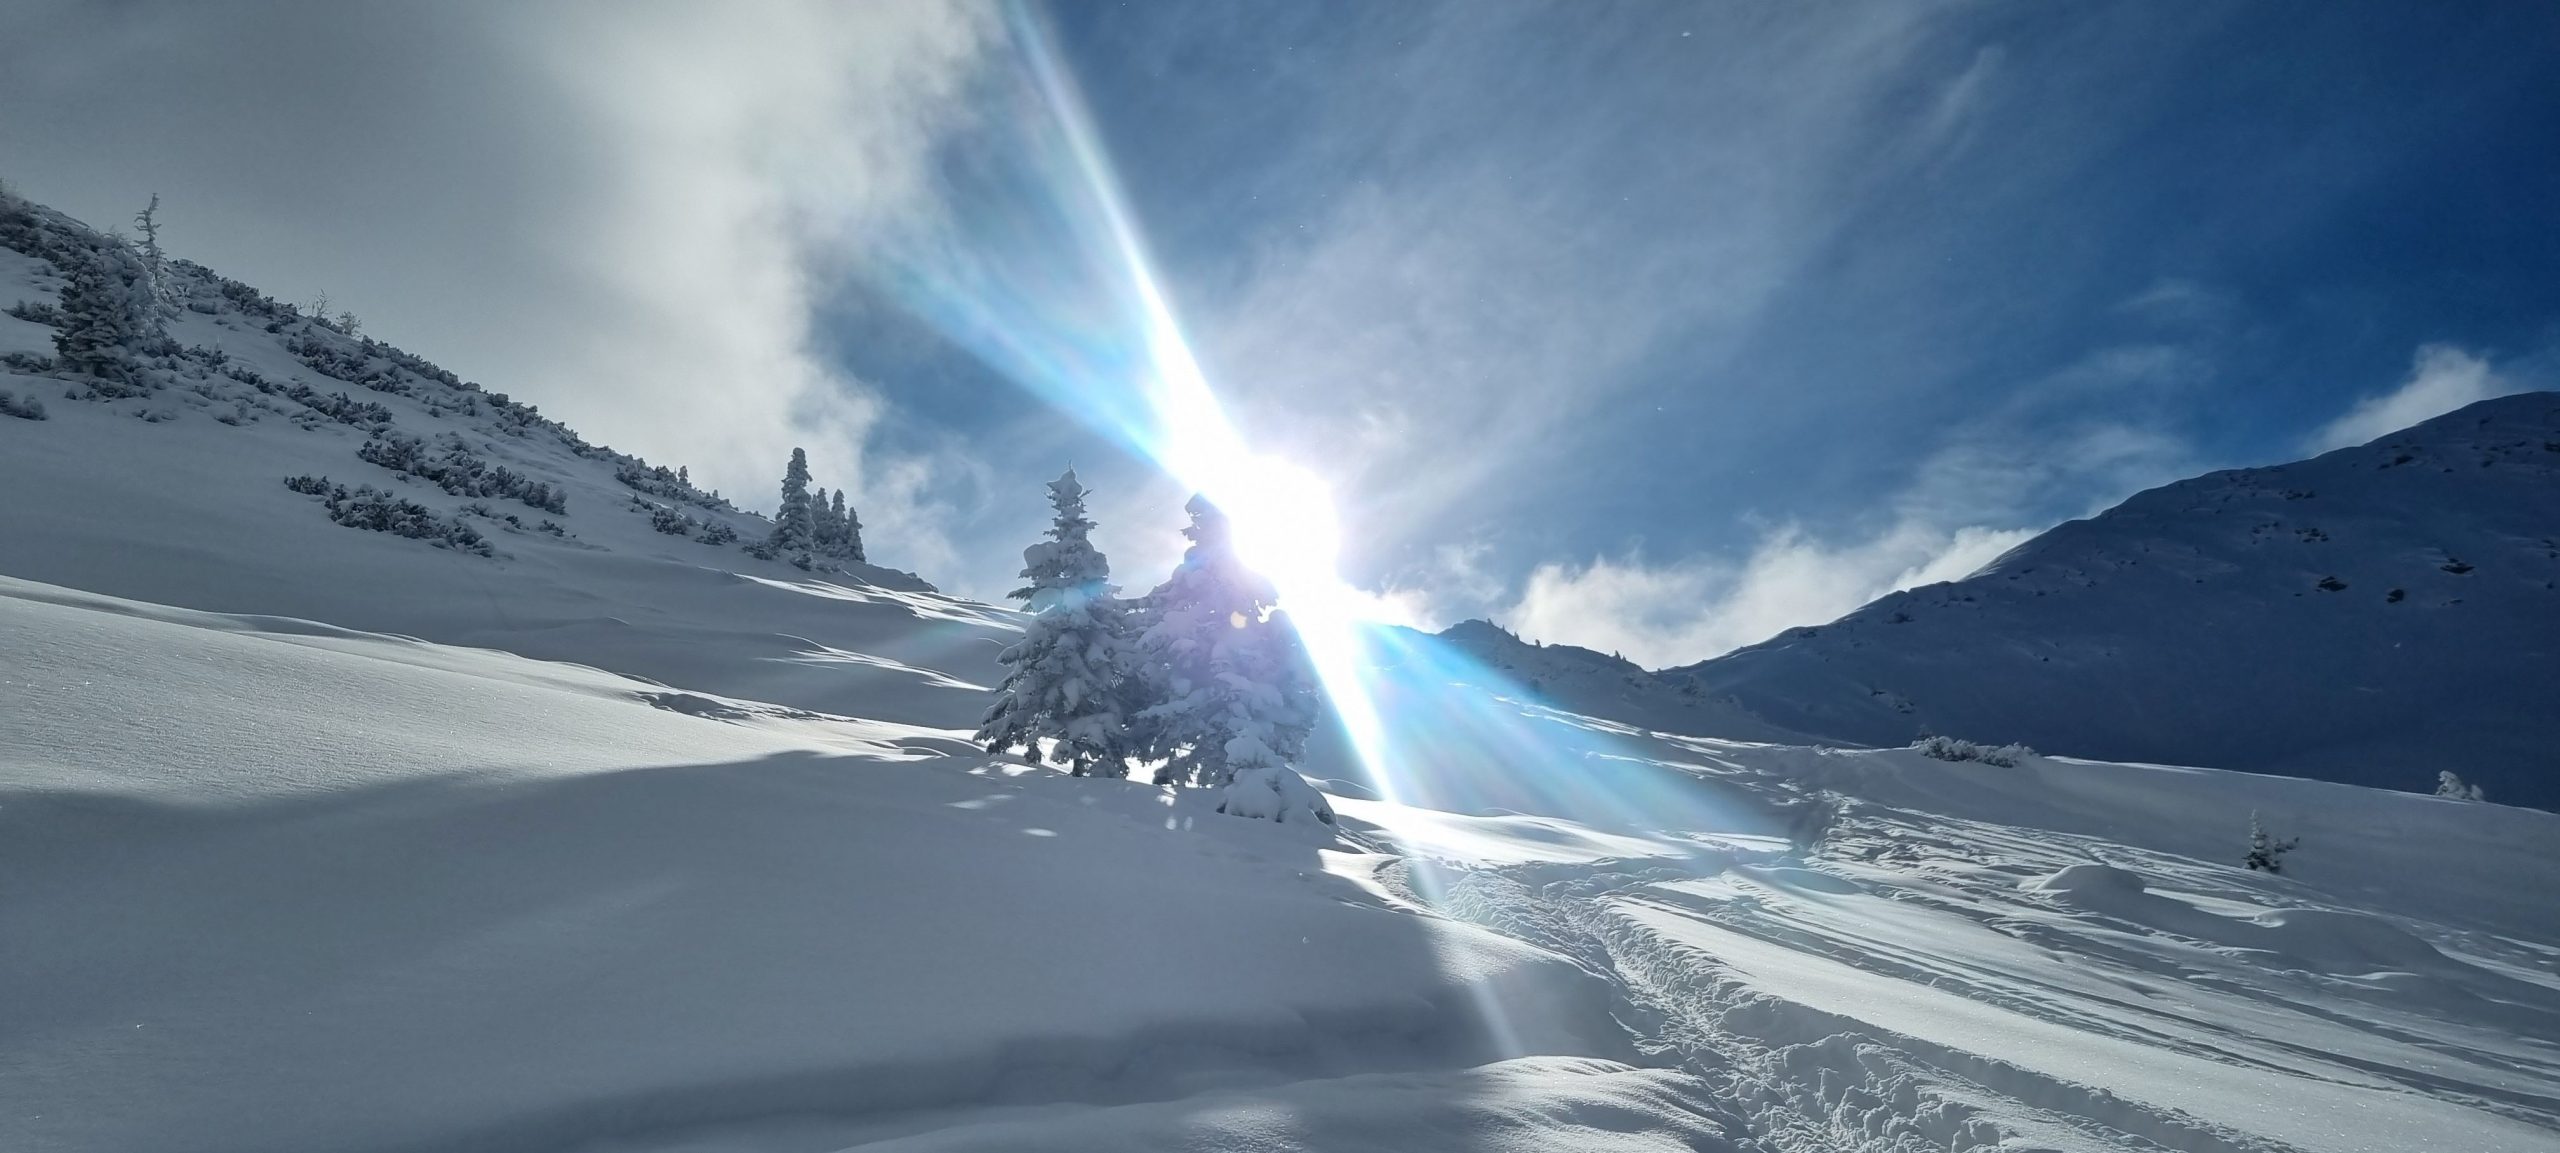 Schneegrubenspitze im kurzen Grund in Tirol mit viel Schnee und spektakulärem Sonnenlicht